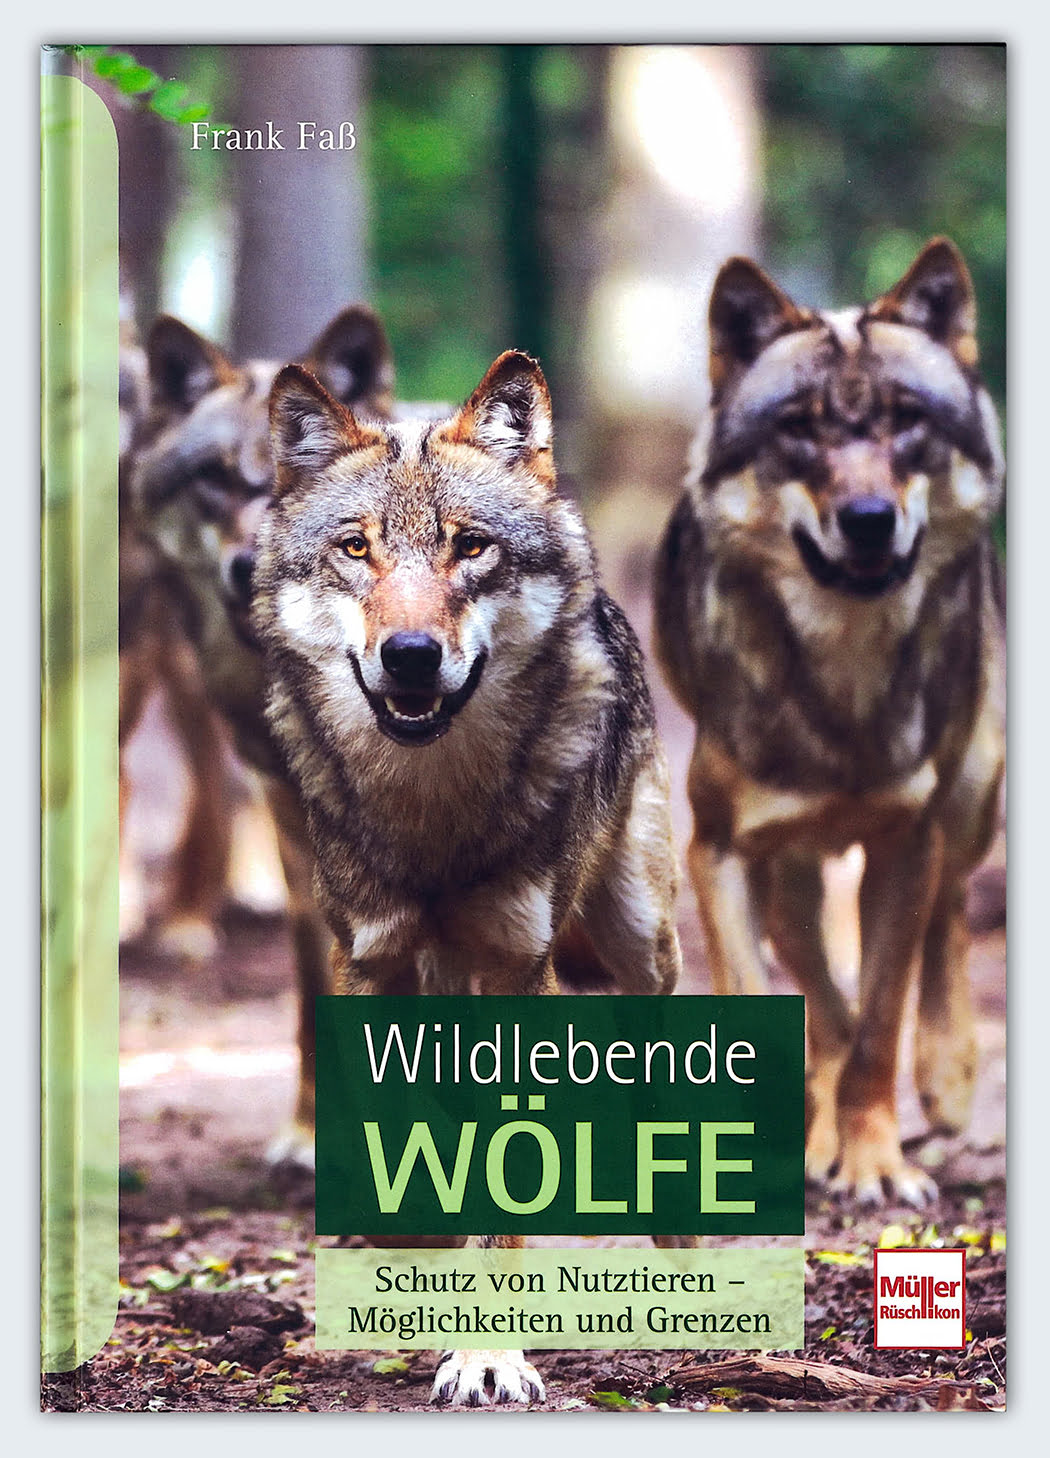 Wolfcenter, Frank Faß, Buch, Wildlebende Wölfe, Schutz von Nutztieren